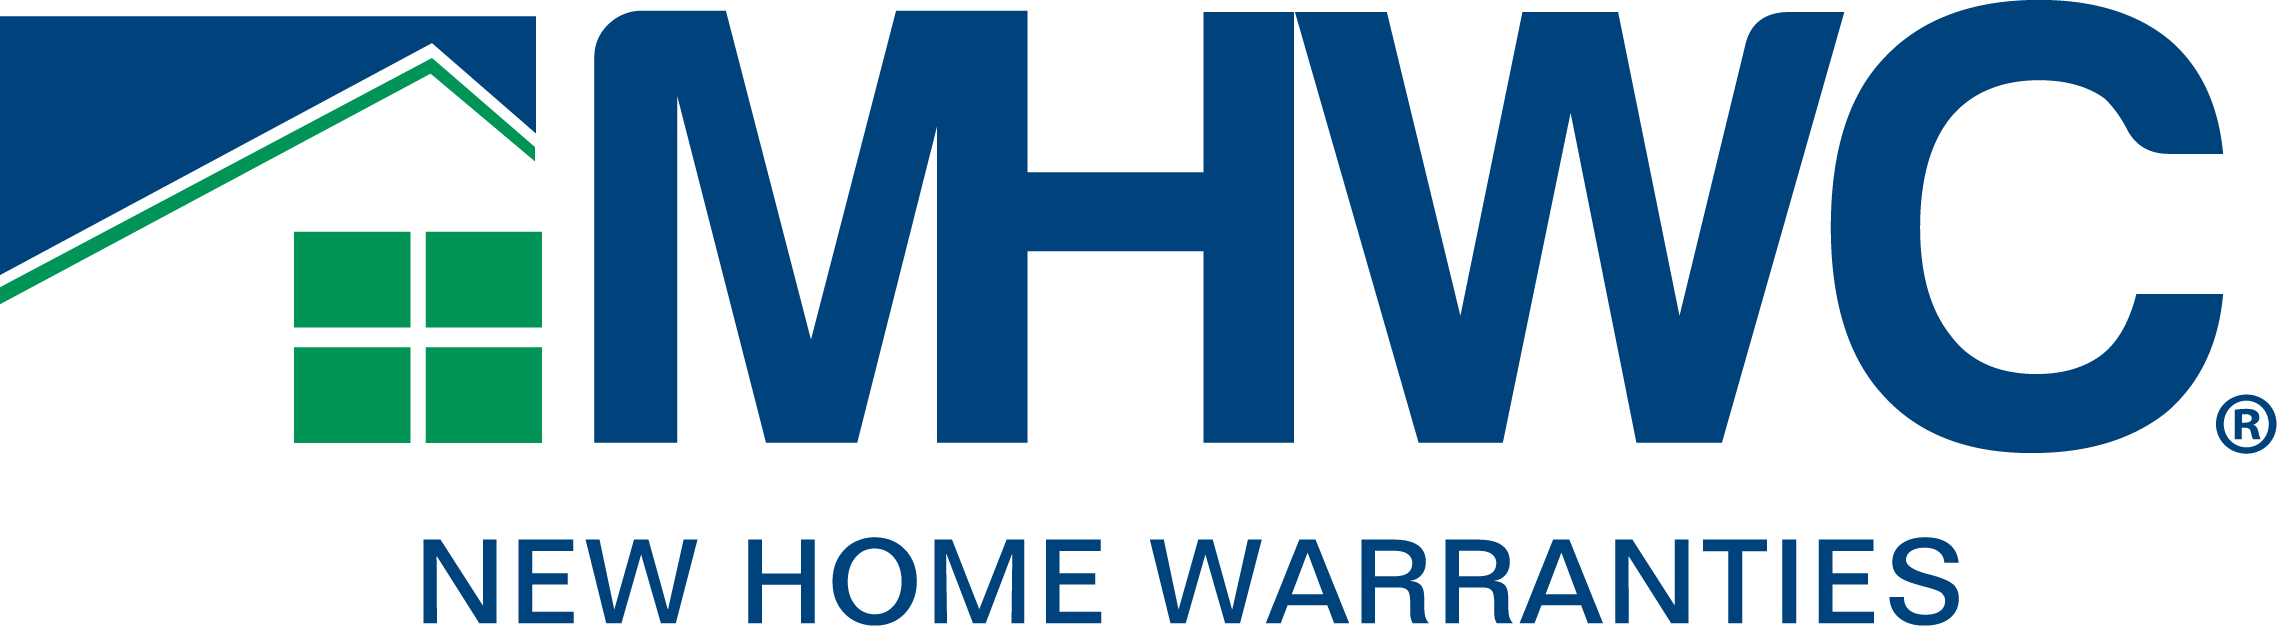 MHWC New Home Warranties